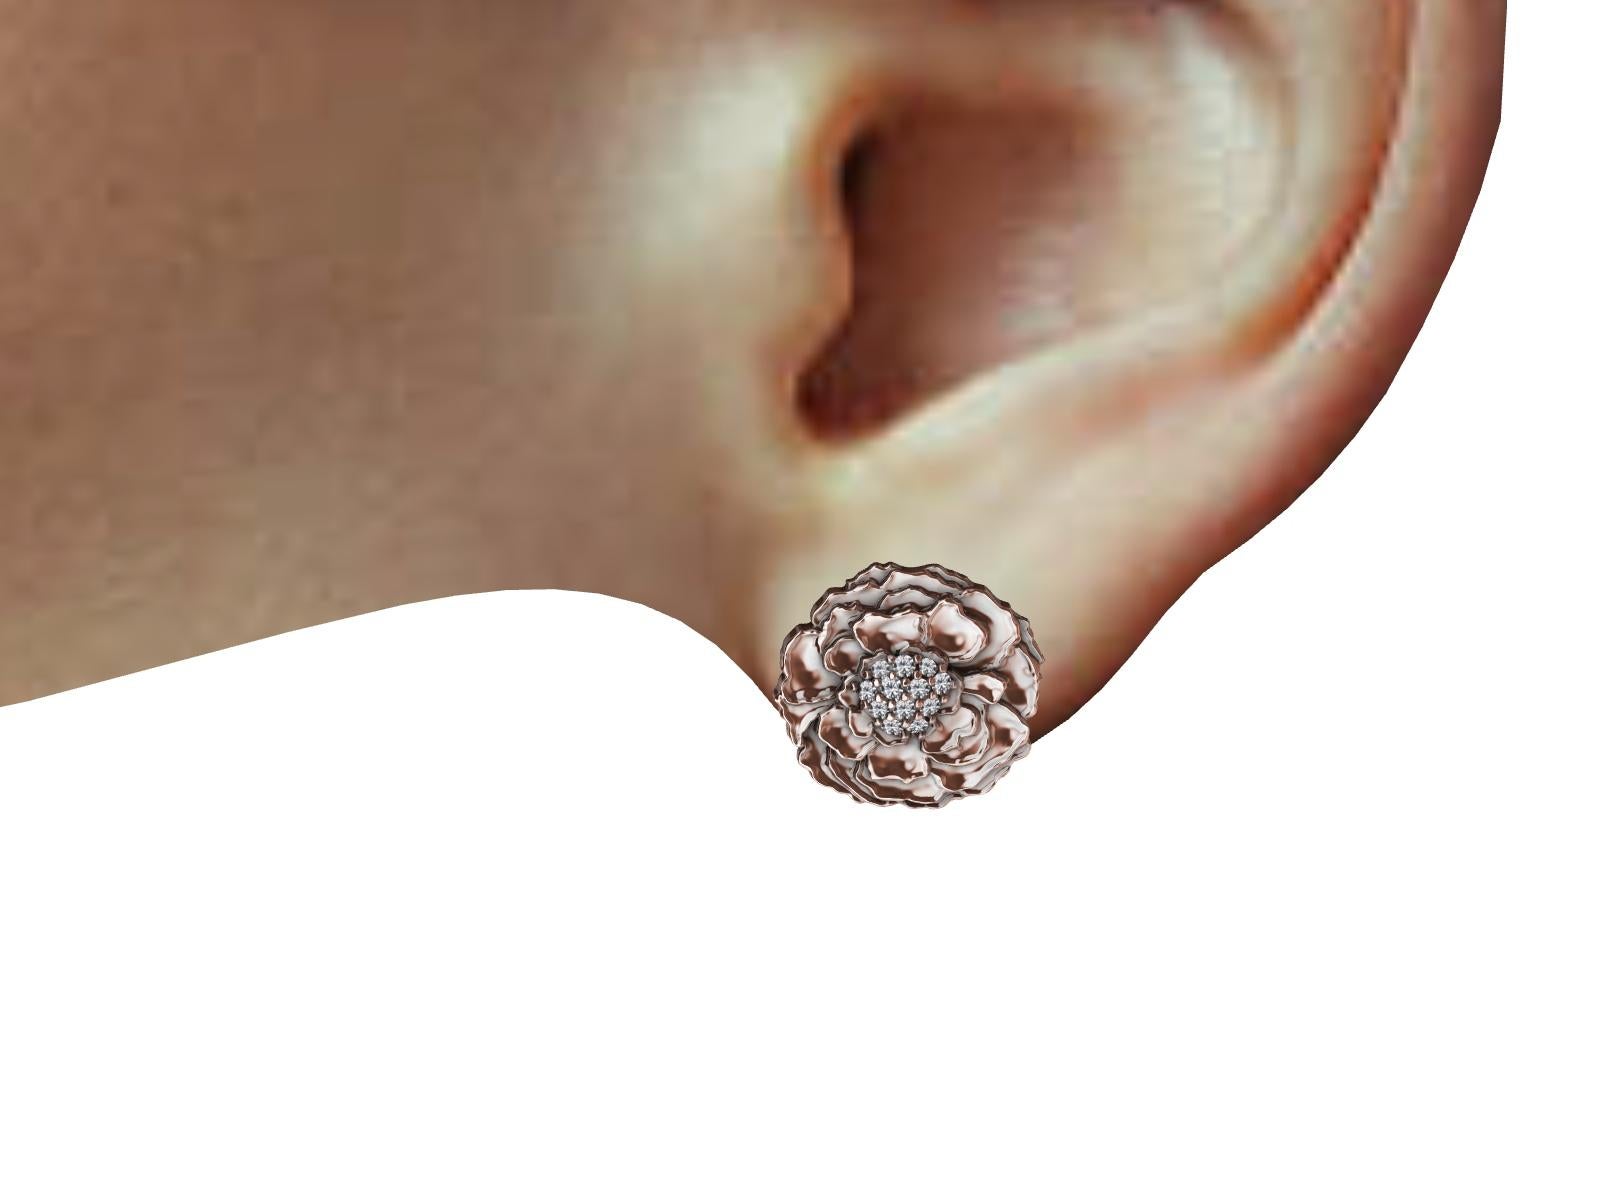 boucles d'oreilles en or rose 18 carats avec diamants, les pétales de la fleur de souci. D'un de mes dessins imprimé en typographie.  5/8e de pouce x 7/16e de pouce  ou 14-15 mm de diamètre. diamants de 0,281 carat de poids, G, SI1.
Fabriqué sur